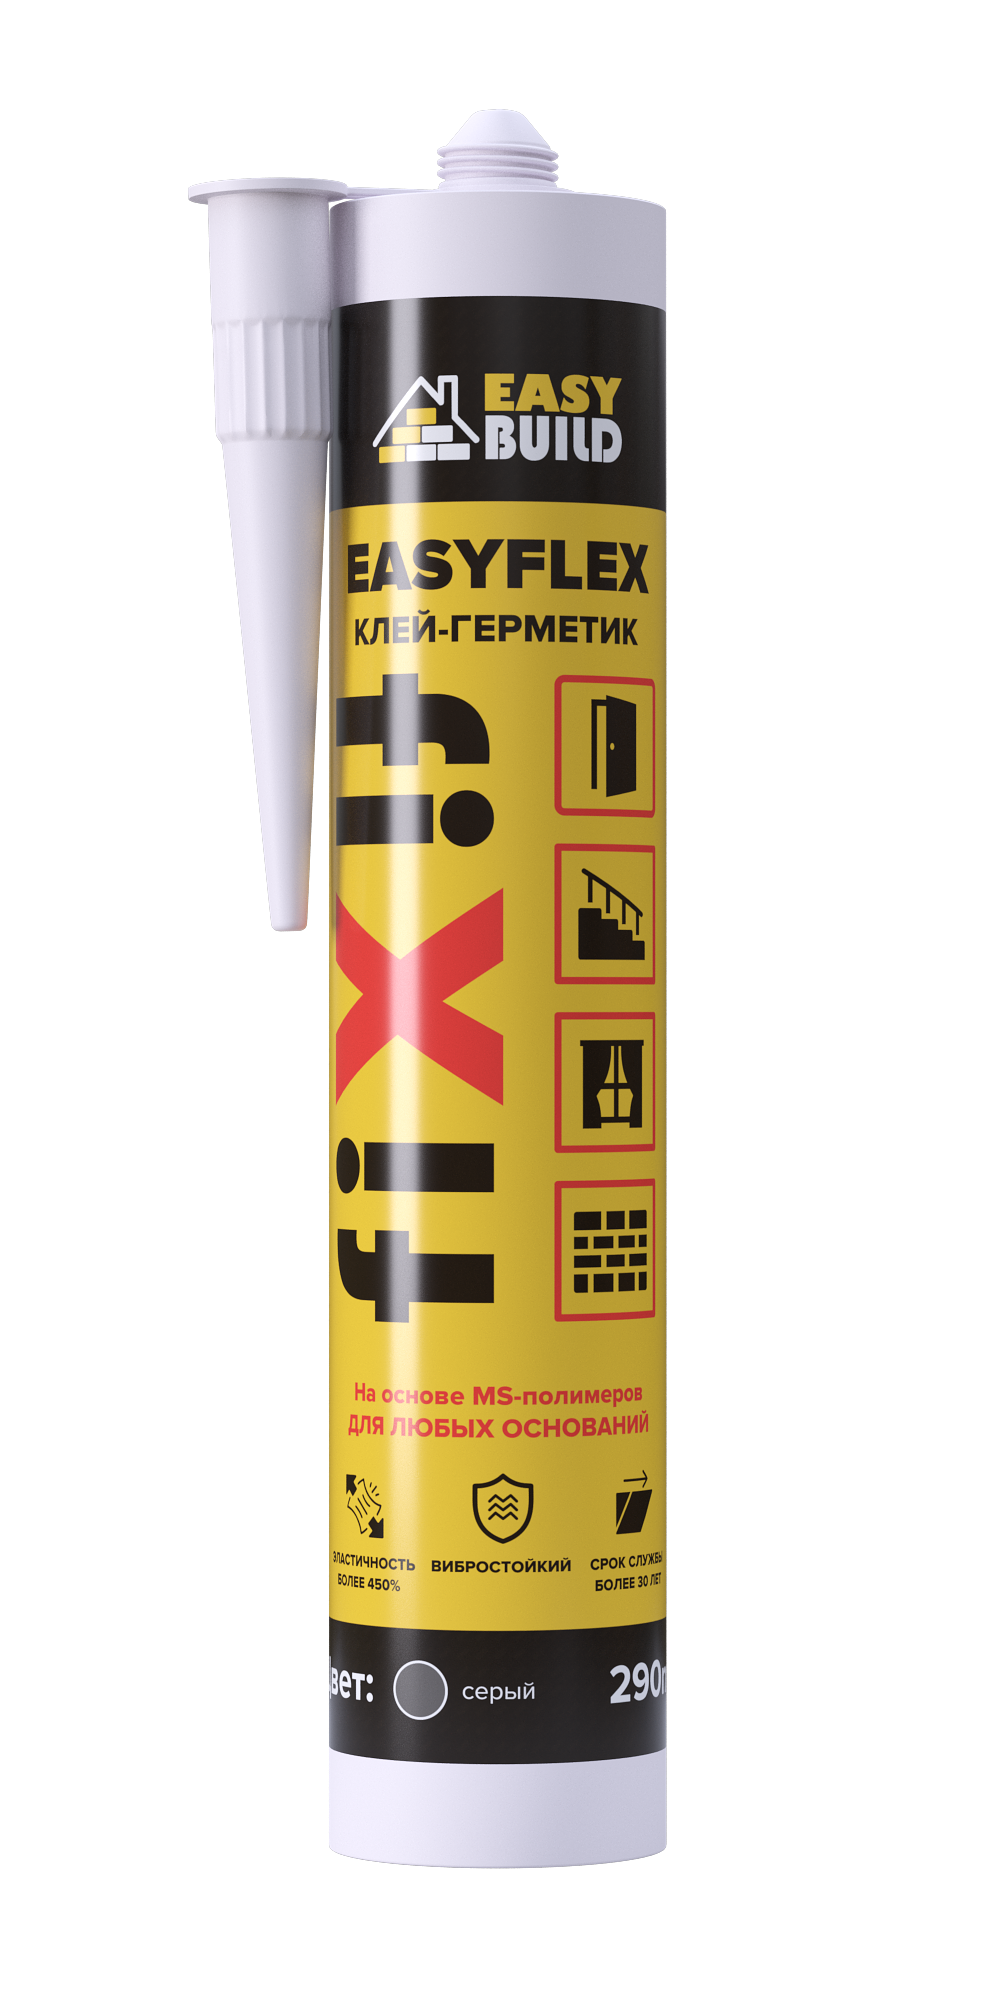 Клей-герметик мультифункциональный Easyflex Fix серый клей герметик yoldas np1 elastic на основе ms полимера 600 мл